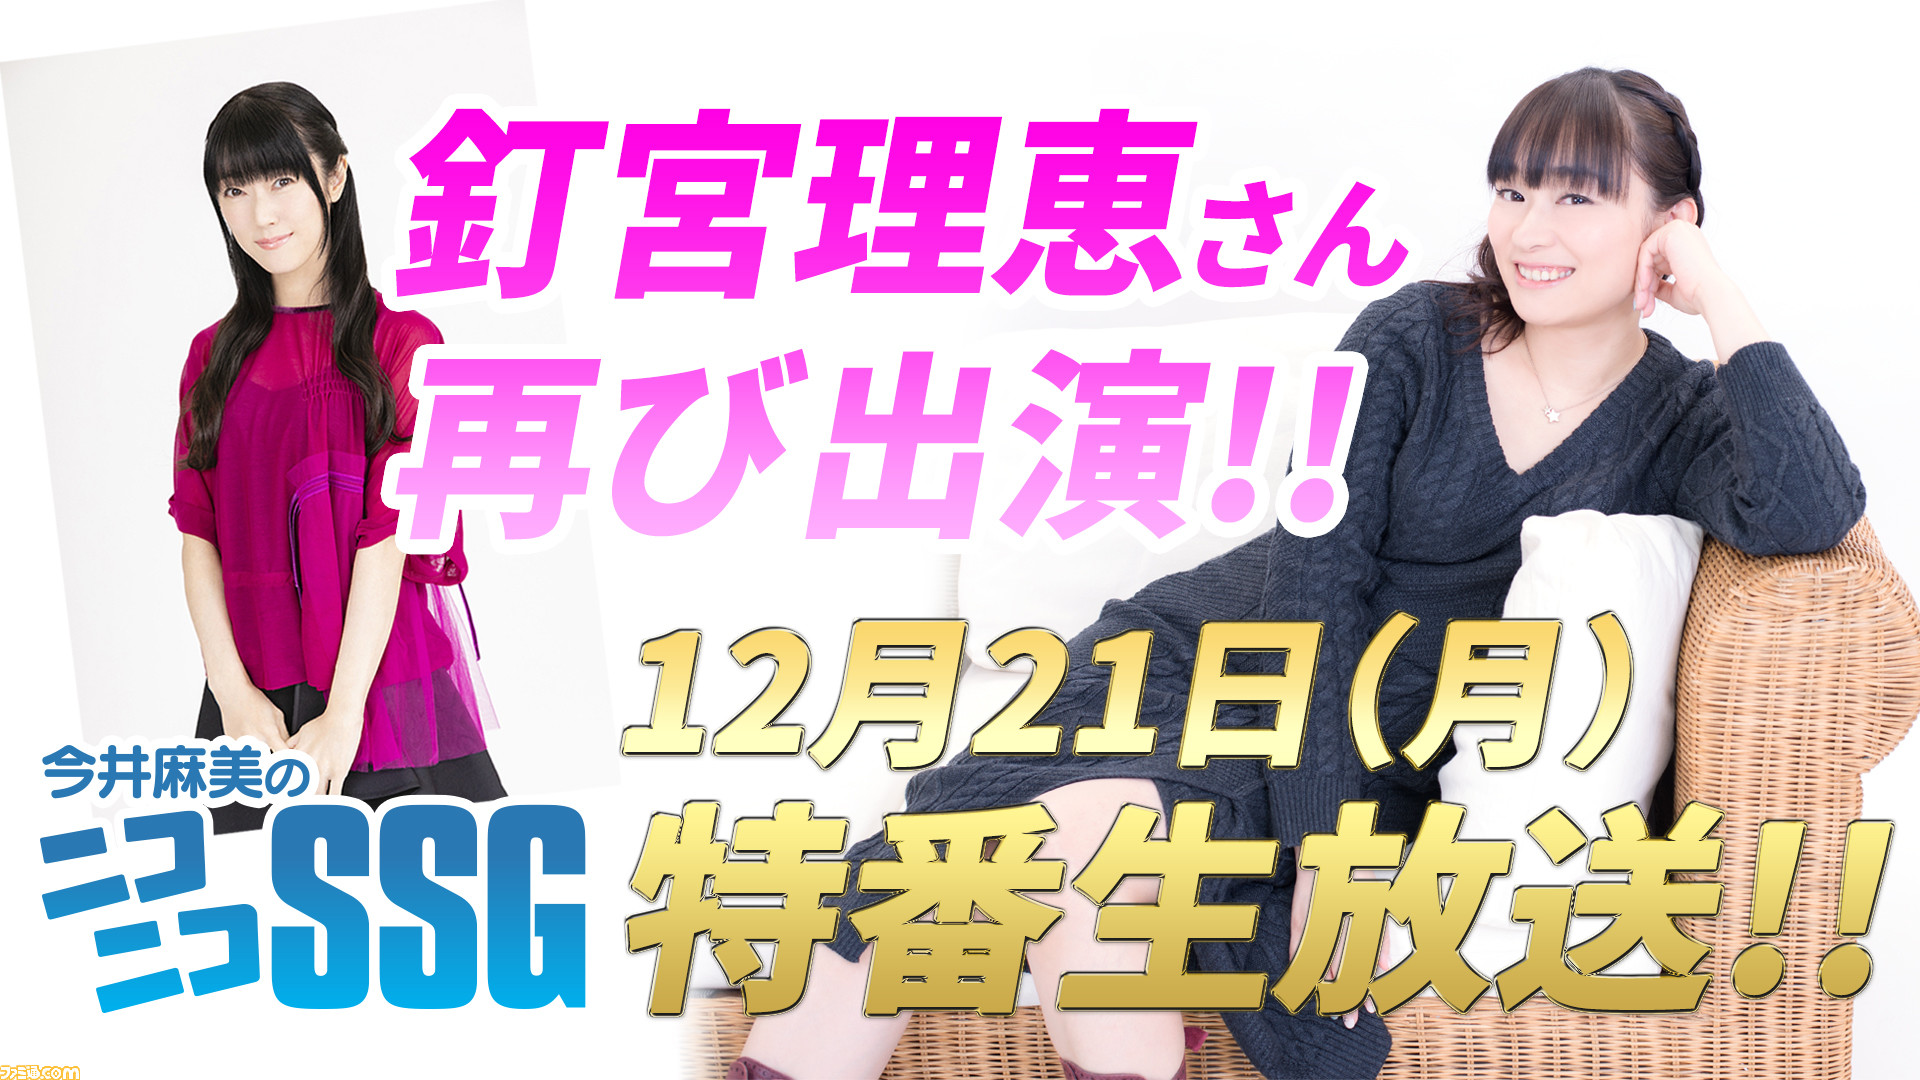 今井麻美のニコニコssg 釘宮理恵さんとの特番生放送が年12月21日 月 に配信決定 ファミ通 Com